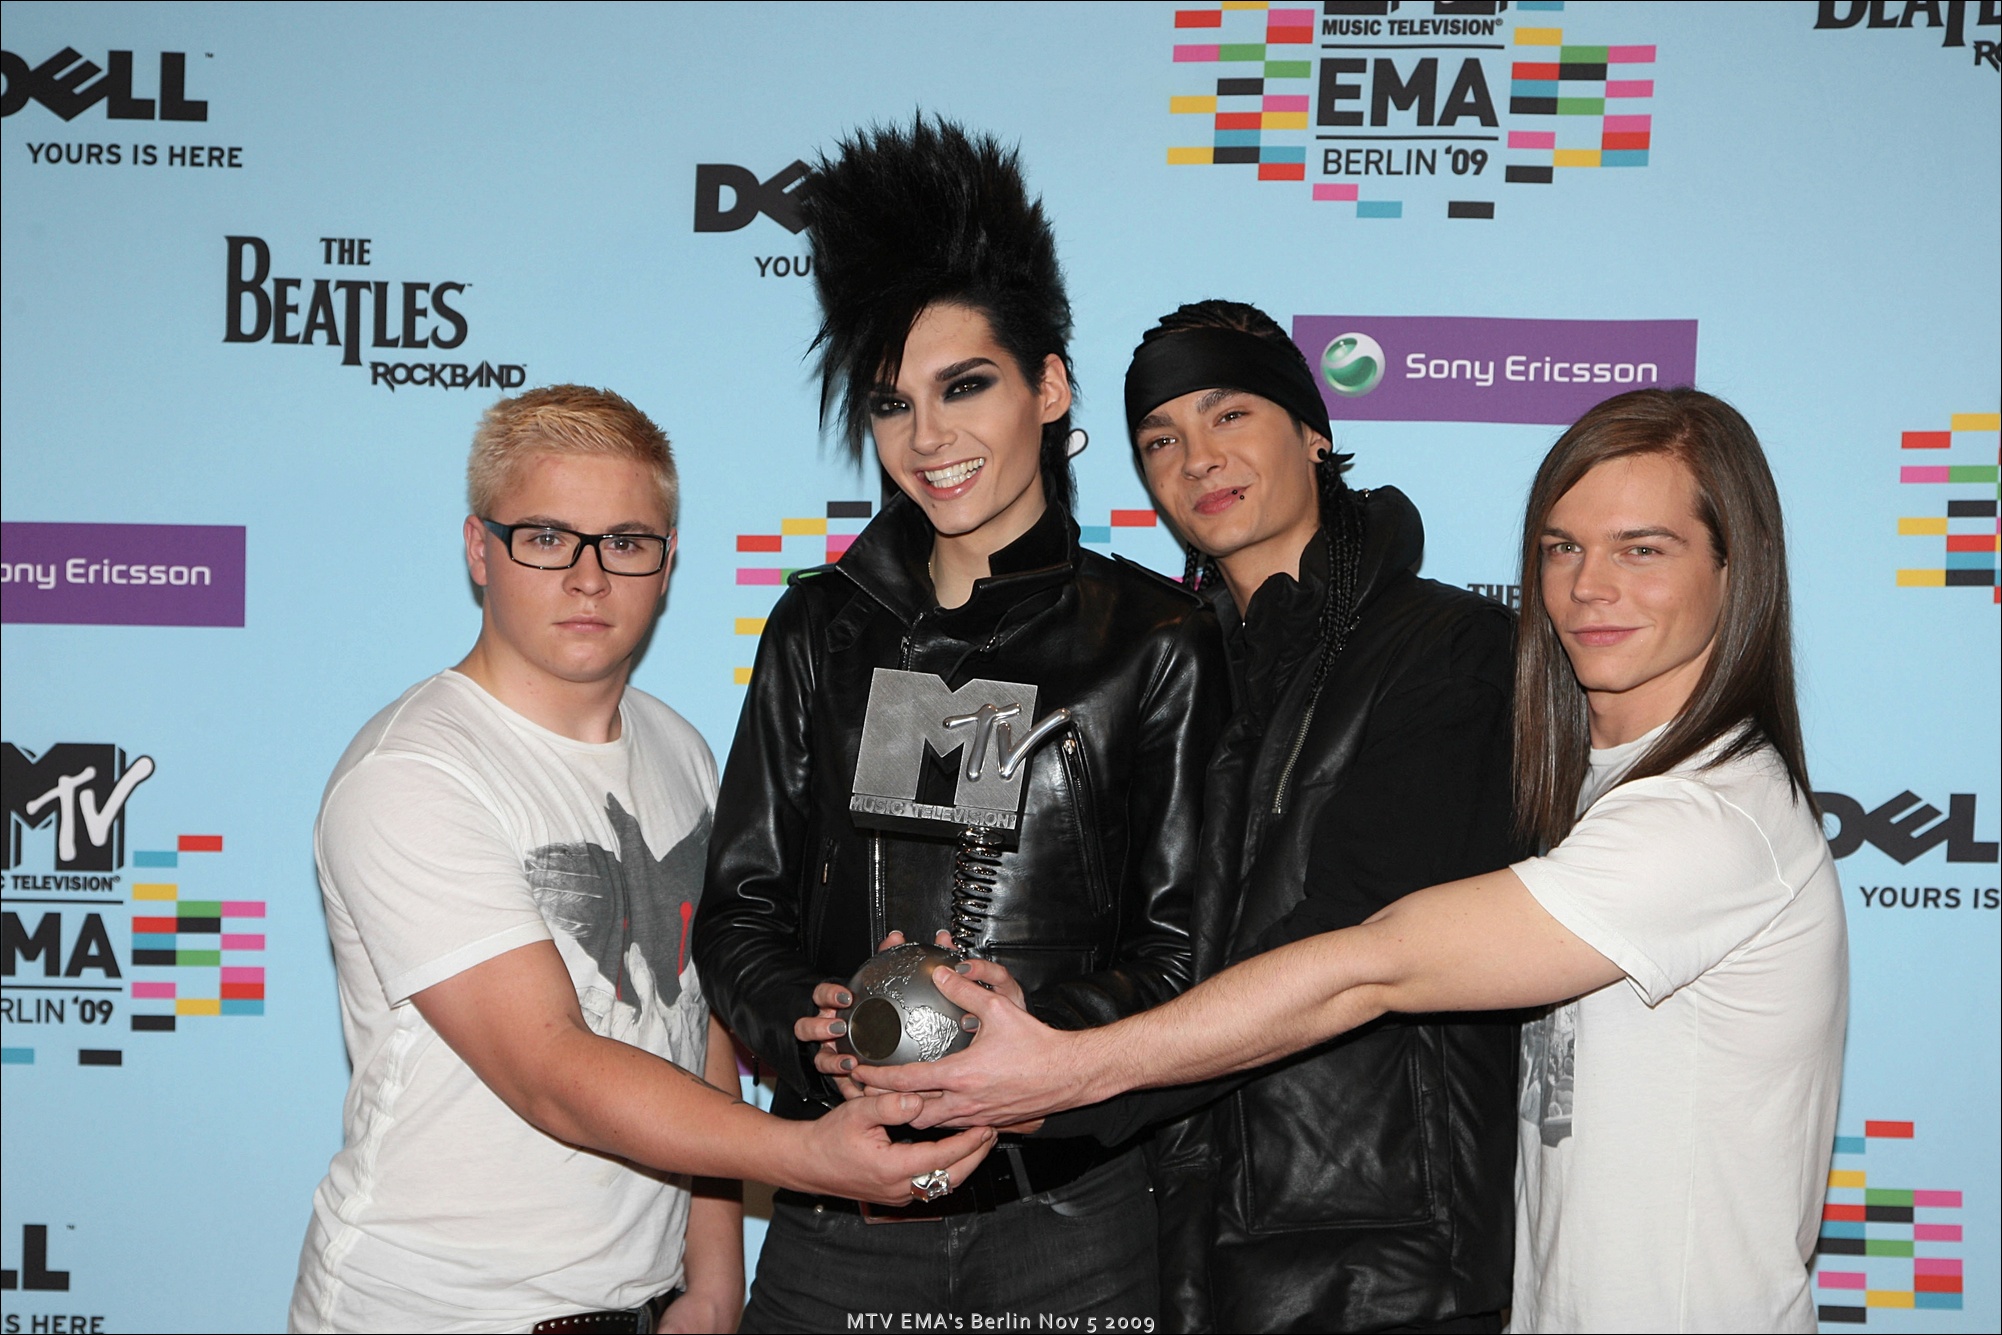 MTV EMA Berlin Nov 5 2009 79